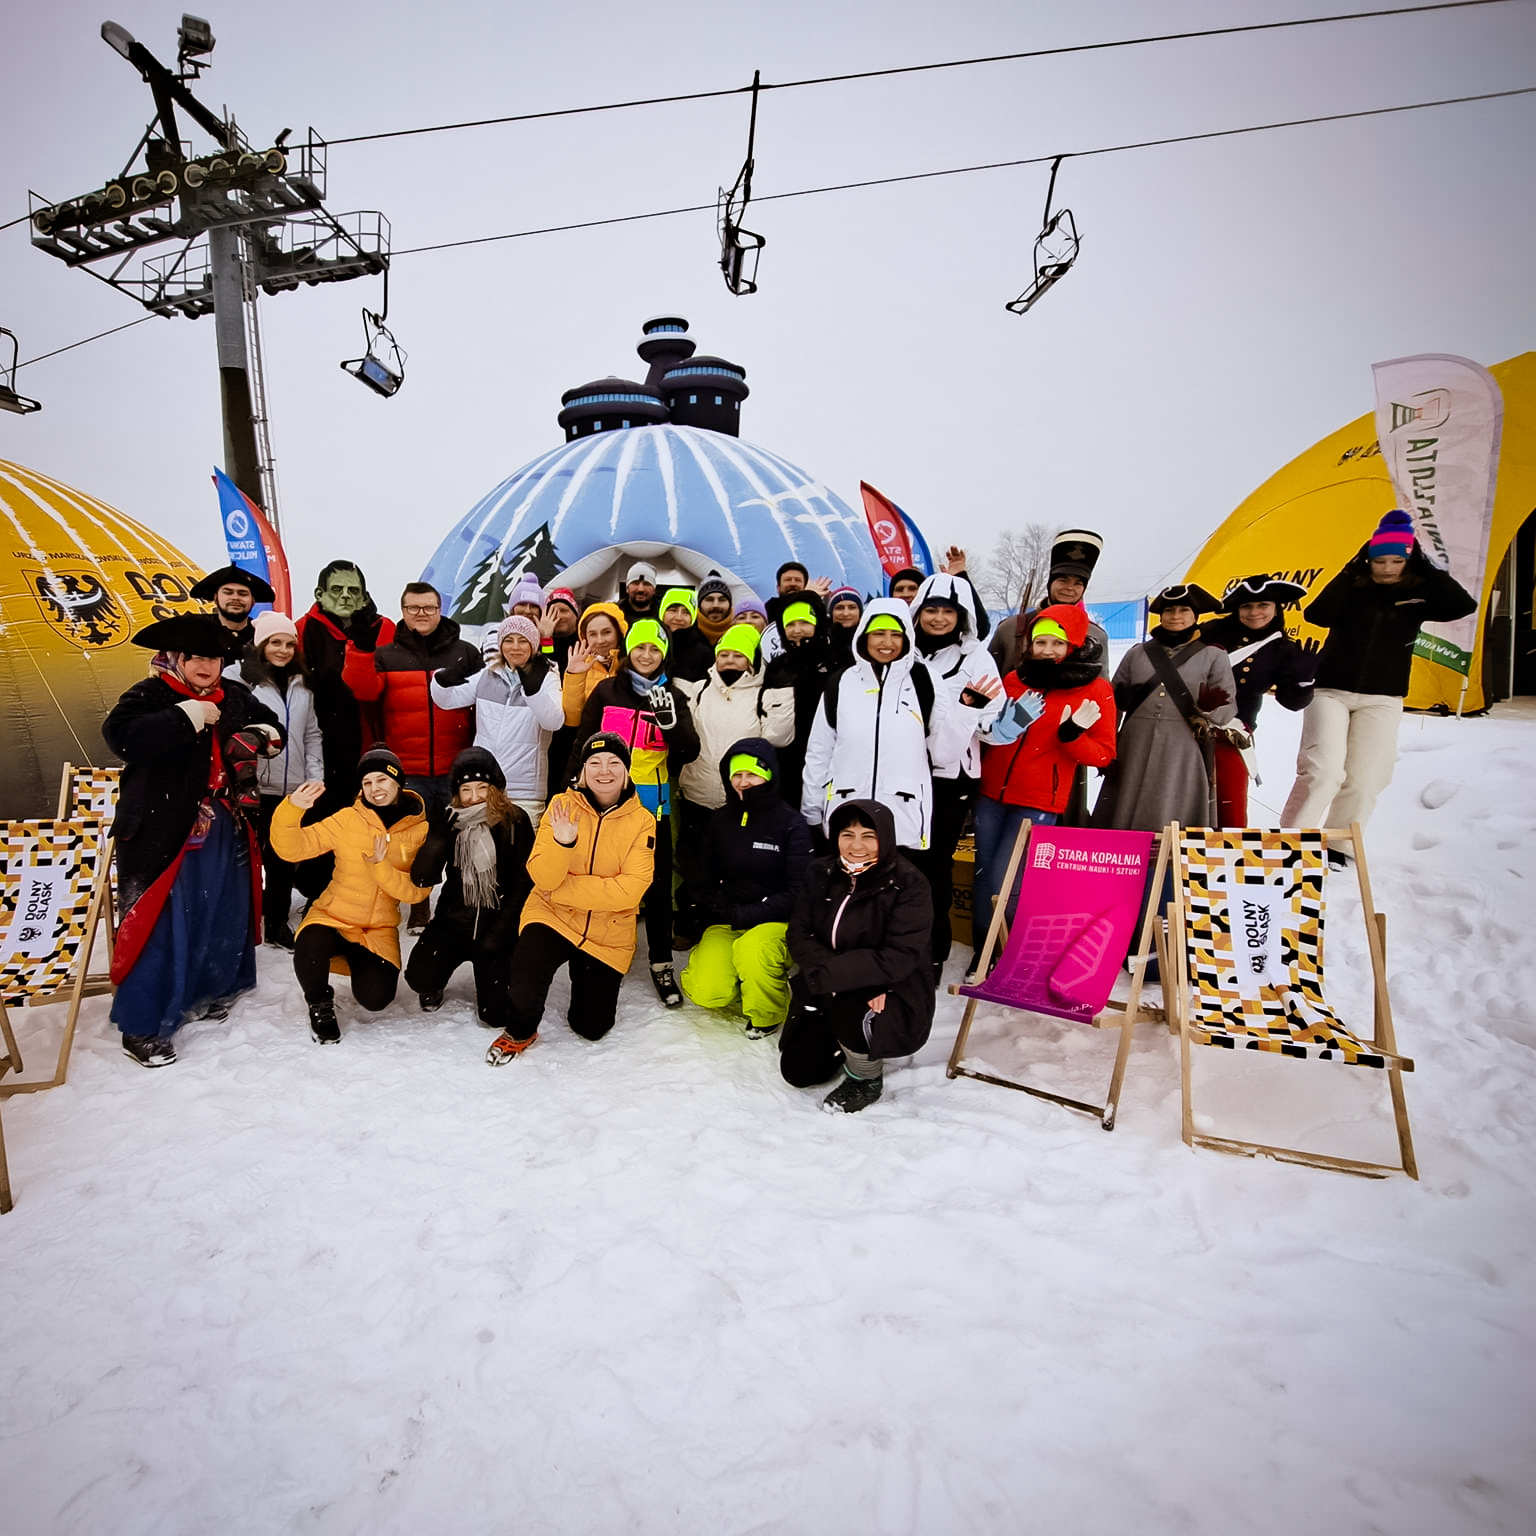 Grupa ludzi ubranych w zimowe kurtki i czapki pozuje do zdjęcia, w towarzystwie leżaków i dmuchanych namiotów, pod wyciągiem narciarskim. Wokoło śnieg.